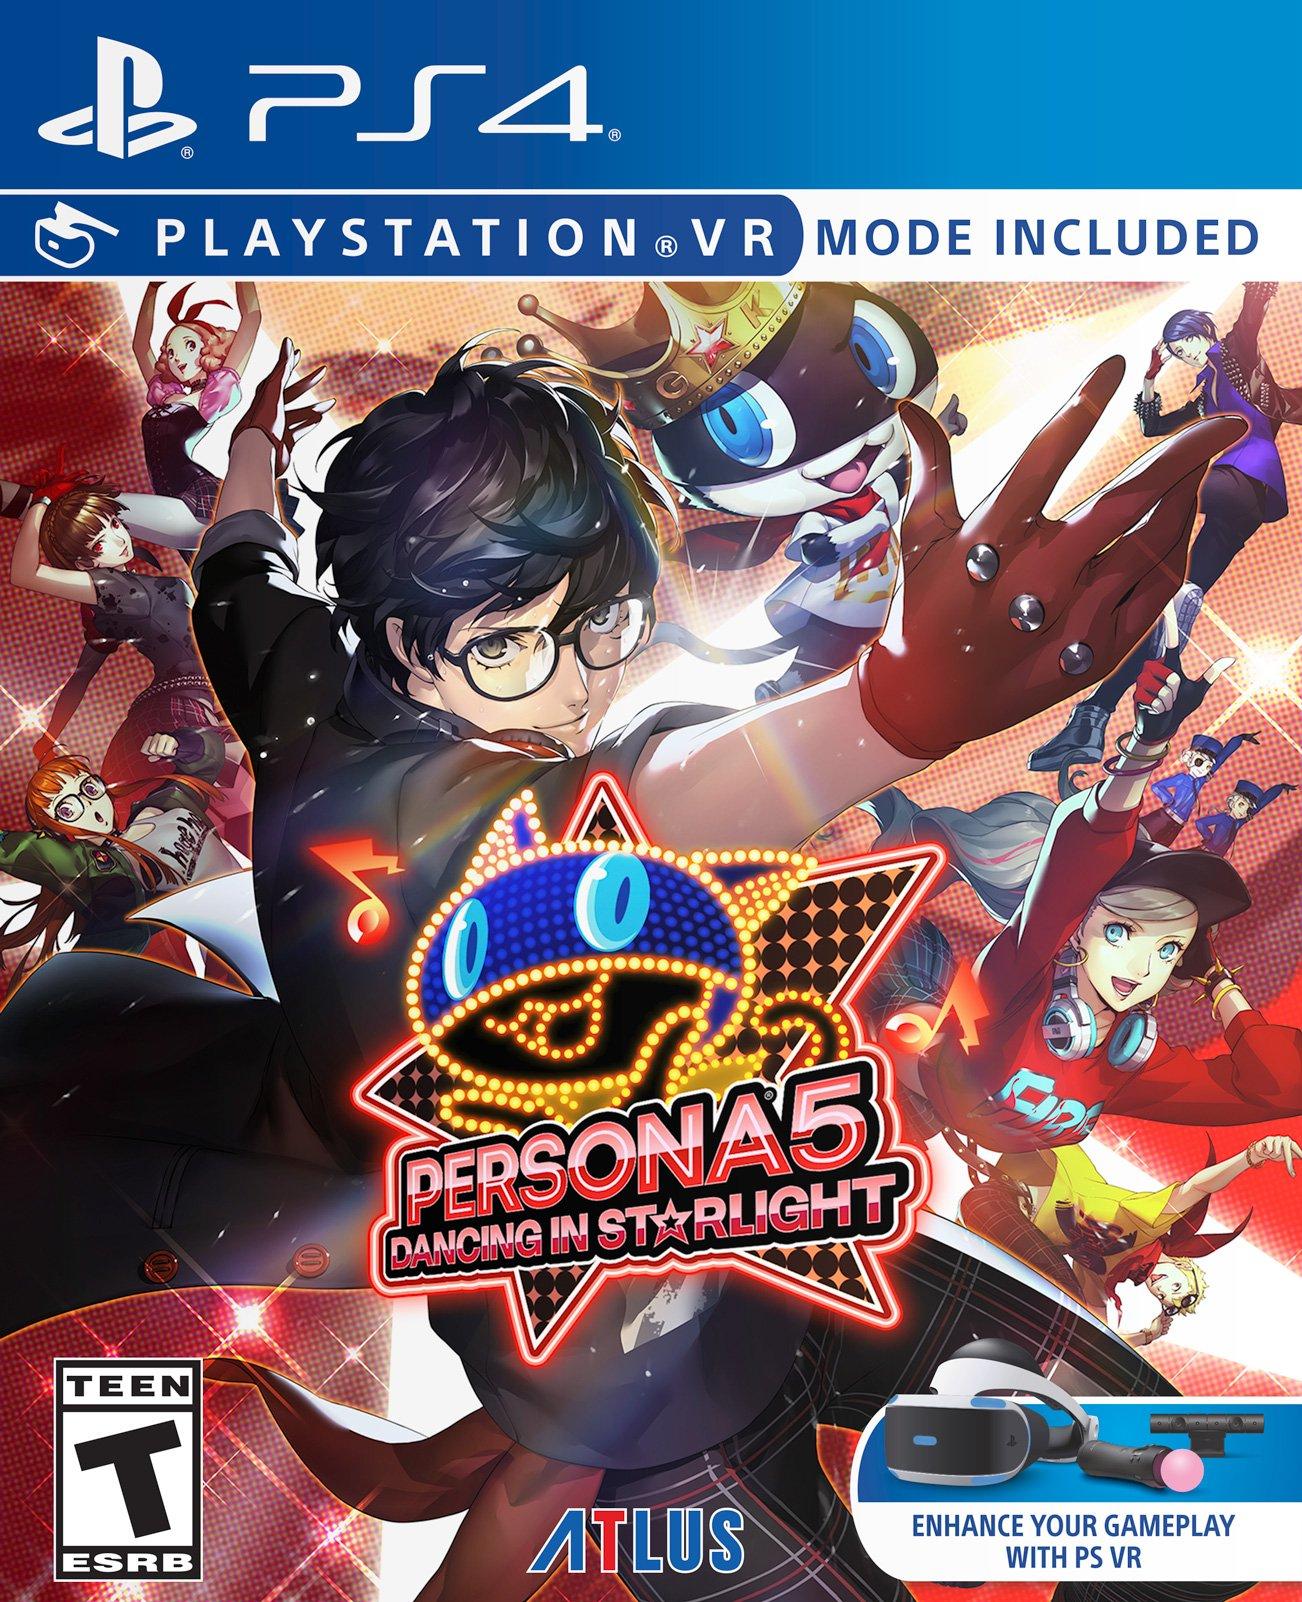 Persona 5: in Starlight - 4 | PlayStation 4 | GameStop